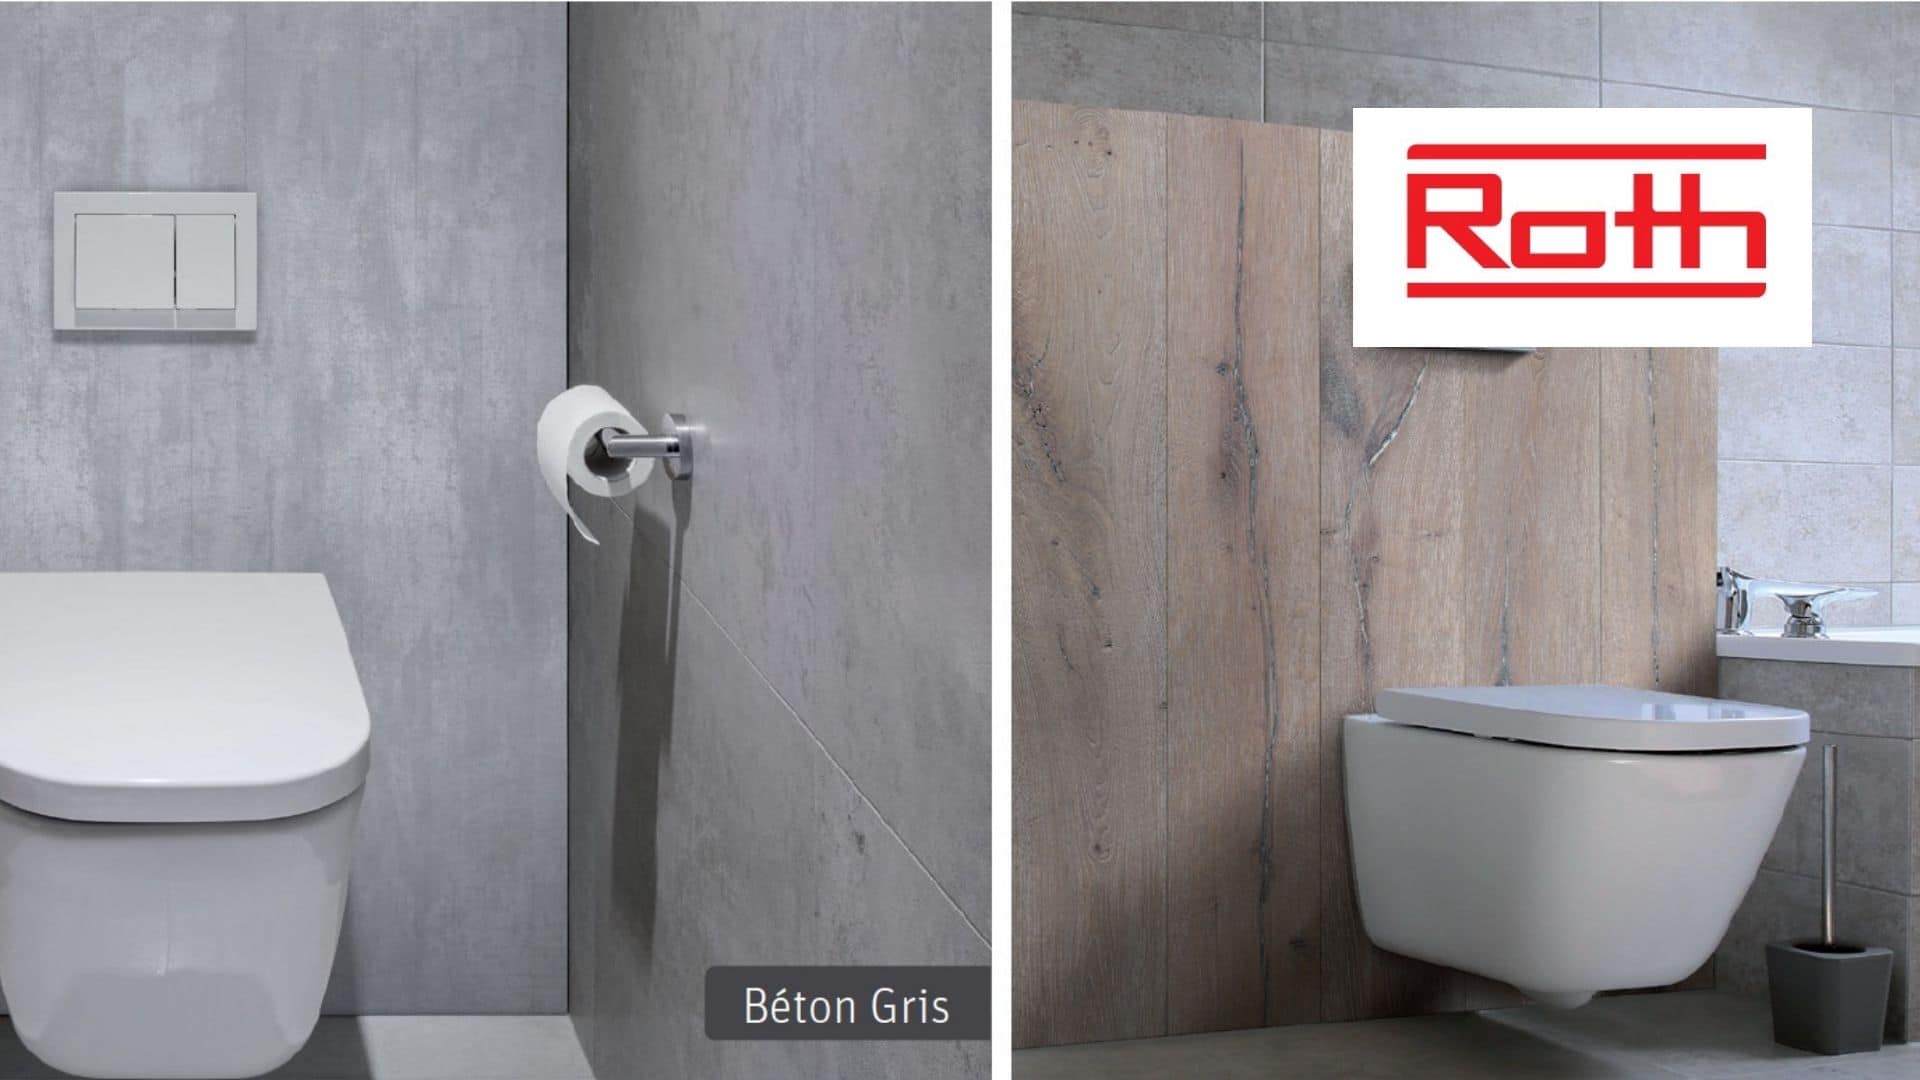 Panneaux muraux BATIPANEL habillage de bâti support La rénovation rapide et design pour salle de bain